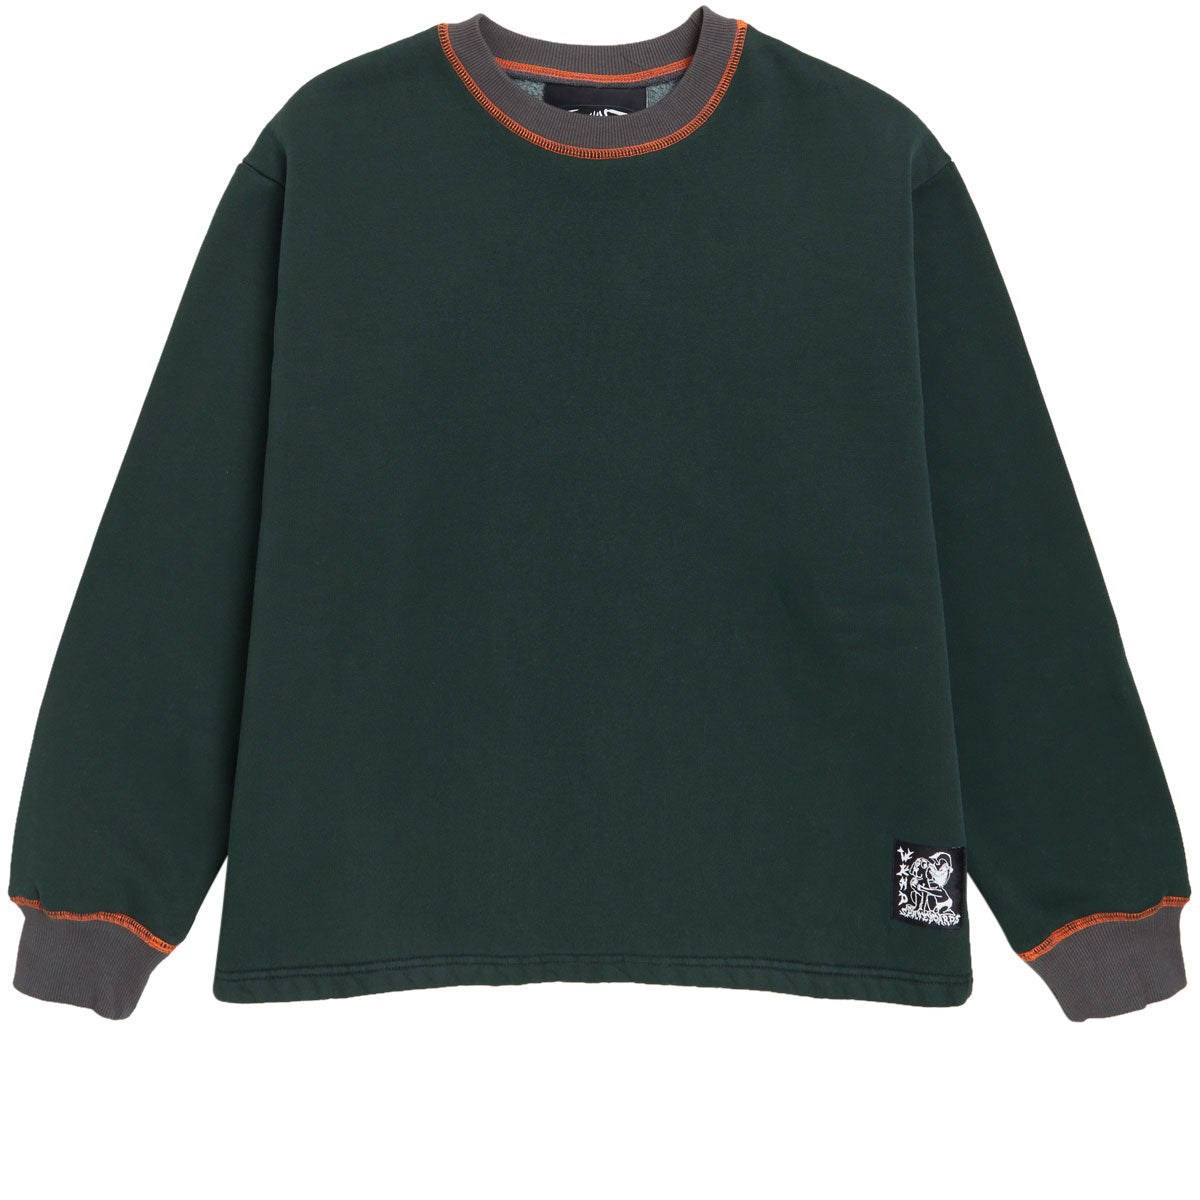 WKND Pigment Jumper Sweatshirt - Green image 1